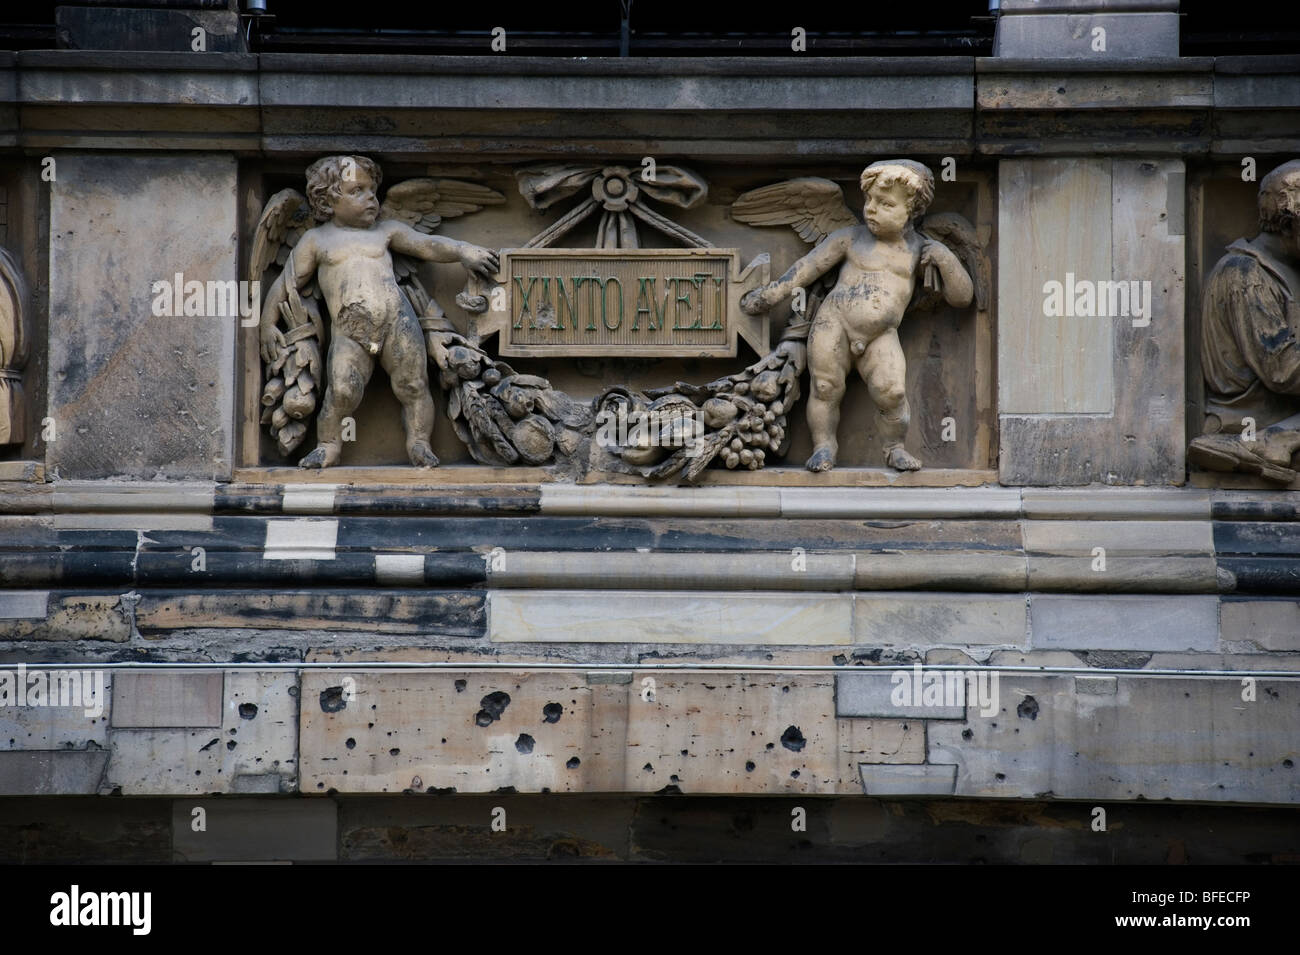 Berlin wall,bullet holes,Martin-Gropius-Bau, Stock Photo